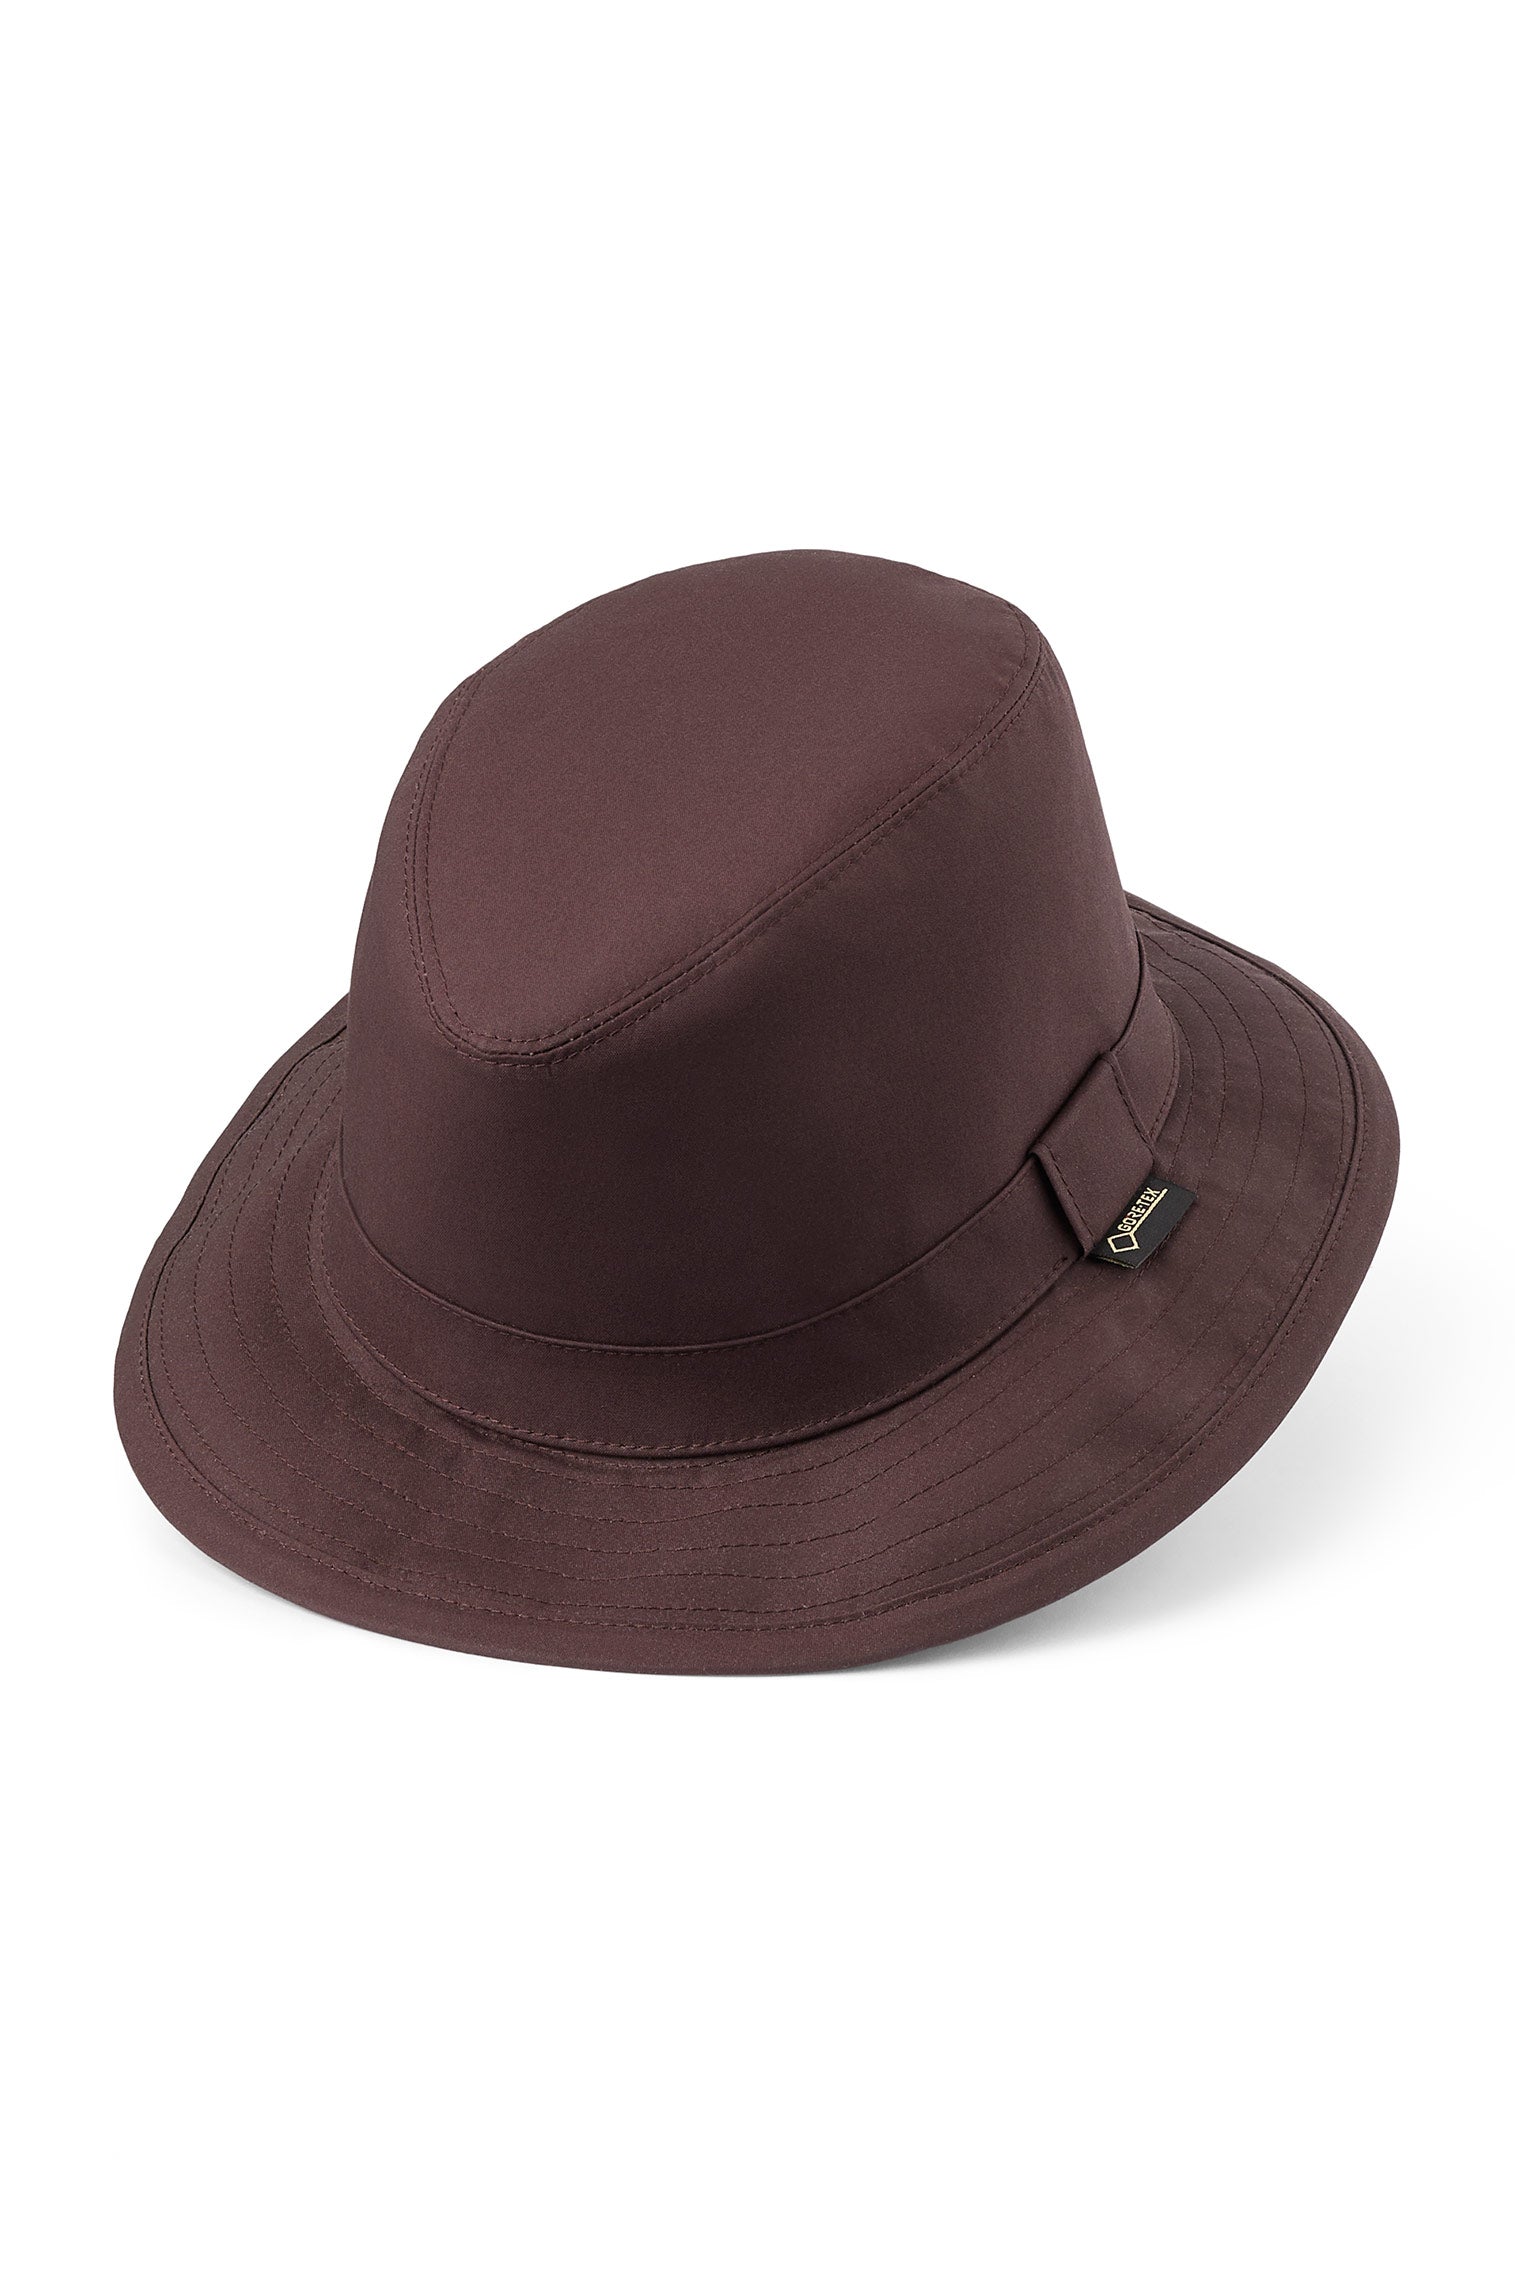 Tay GORE-TEX Hat - Men's Hats - Lock & Co. Hatters London UK